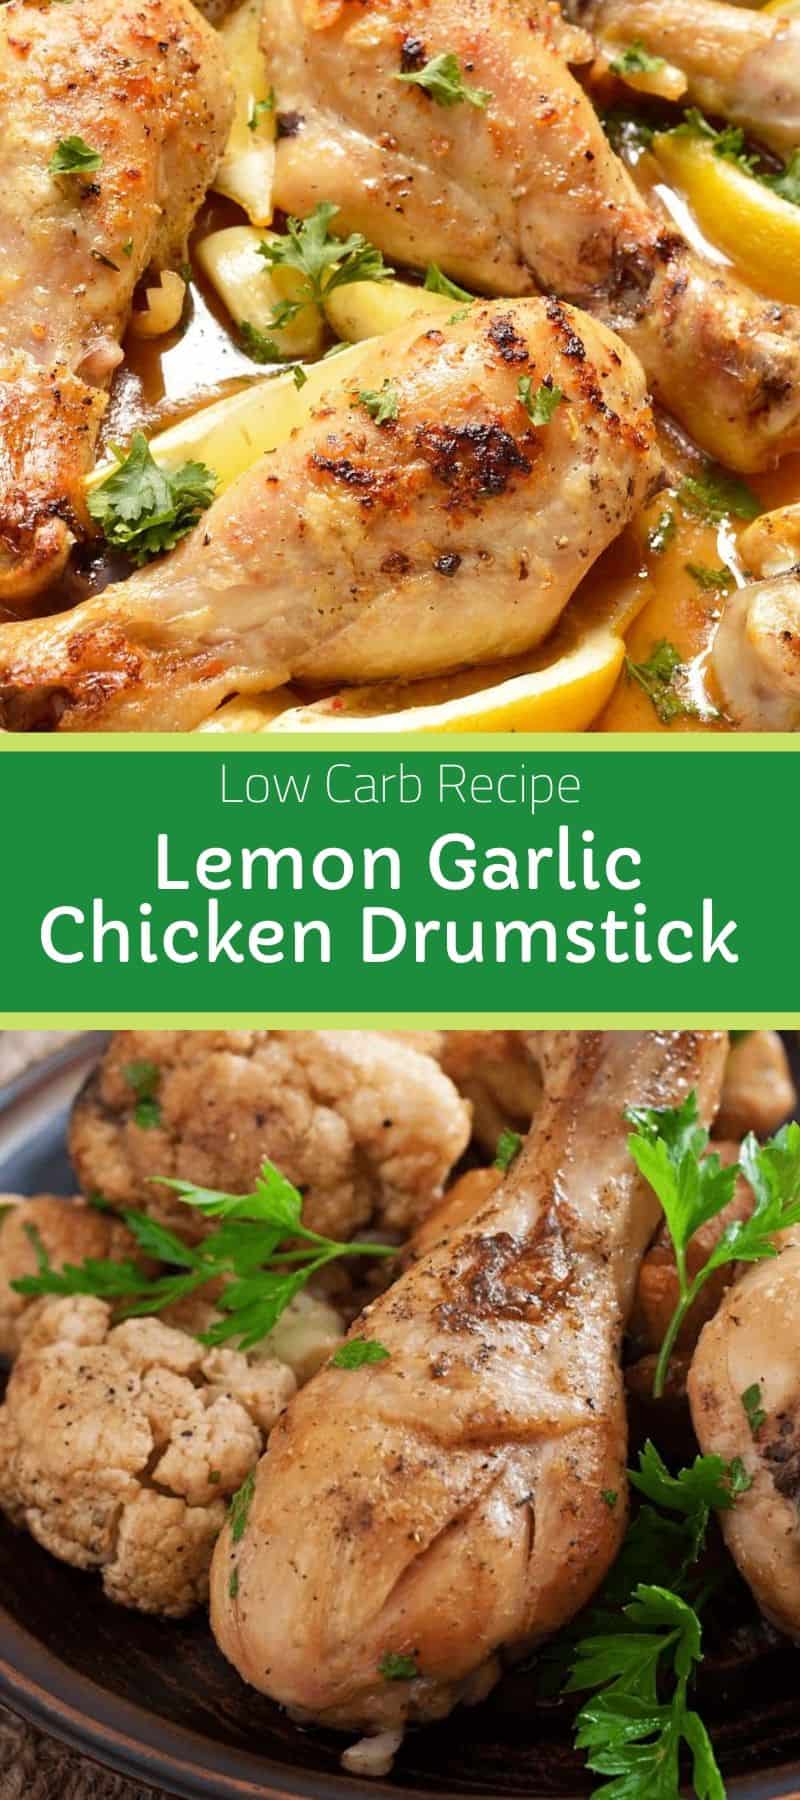 Low Carb Lemon Garlic Chicken Drumstick Recipe 3